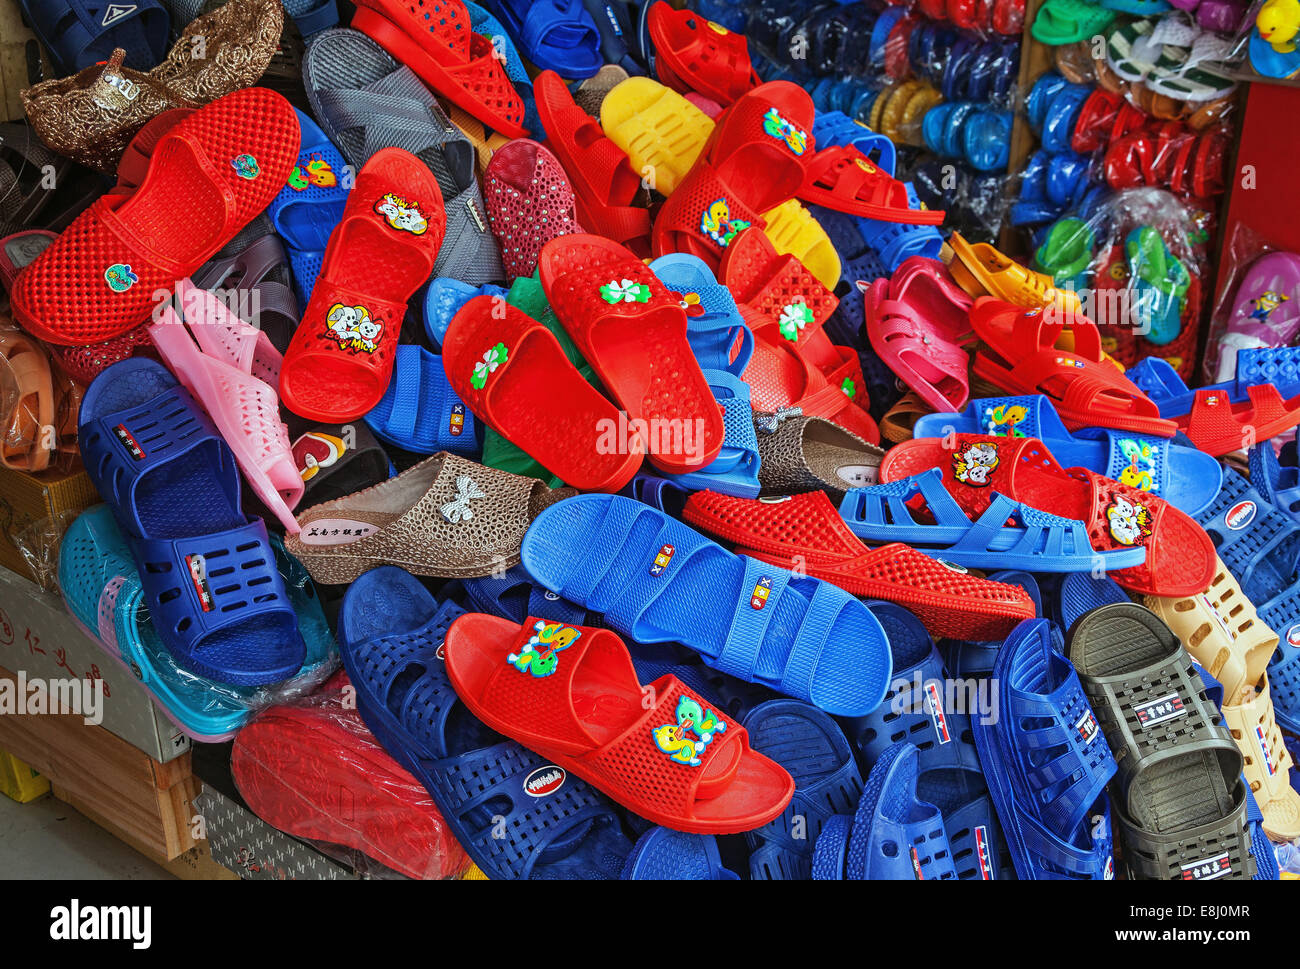 CHONGQING, CHINE - septembre 2, 2014 : chaussures colorées de la production chinoise à un magasin local de Chongqing, Chine, le 2 septembre, 2 Banque D'Images